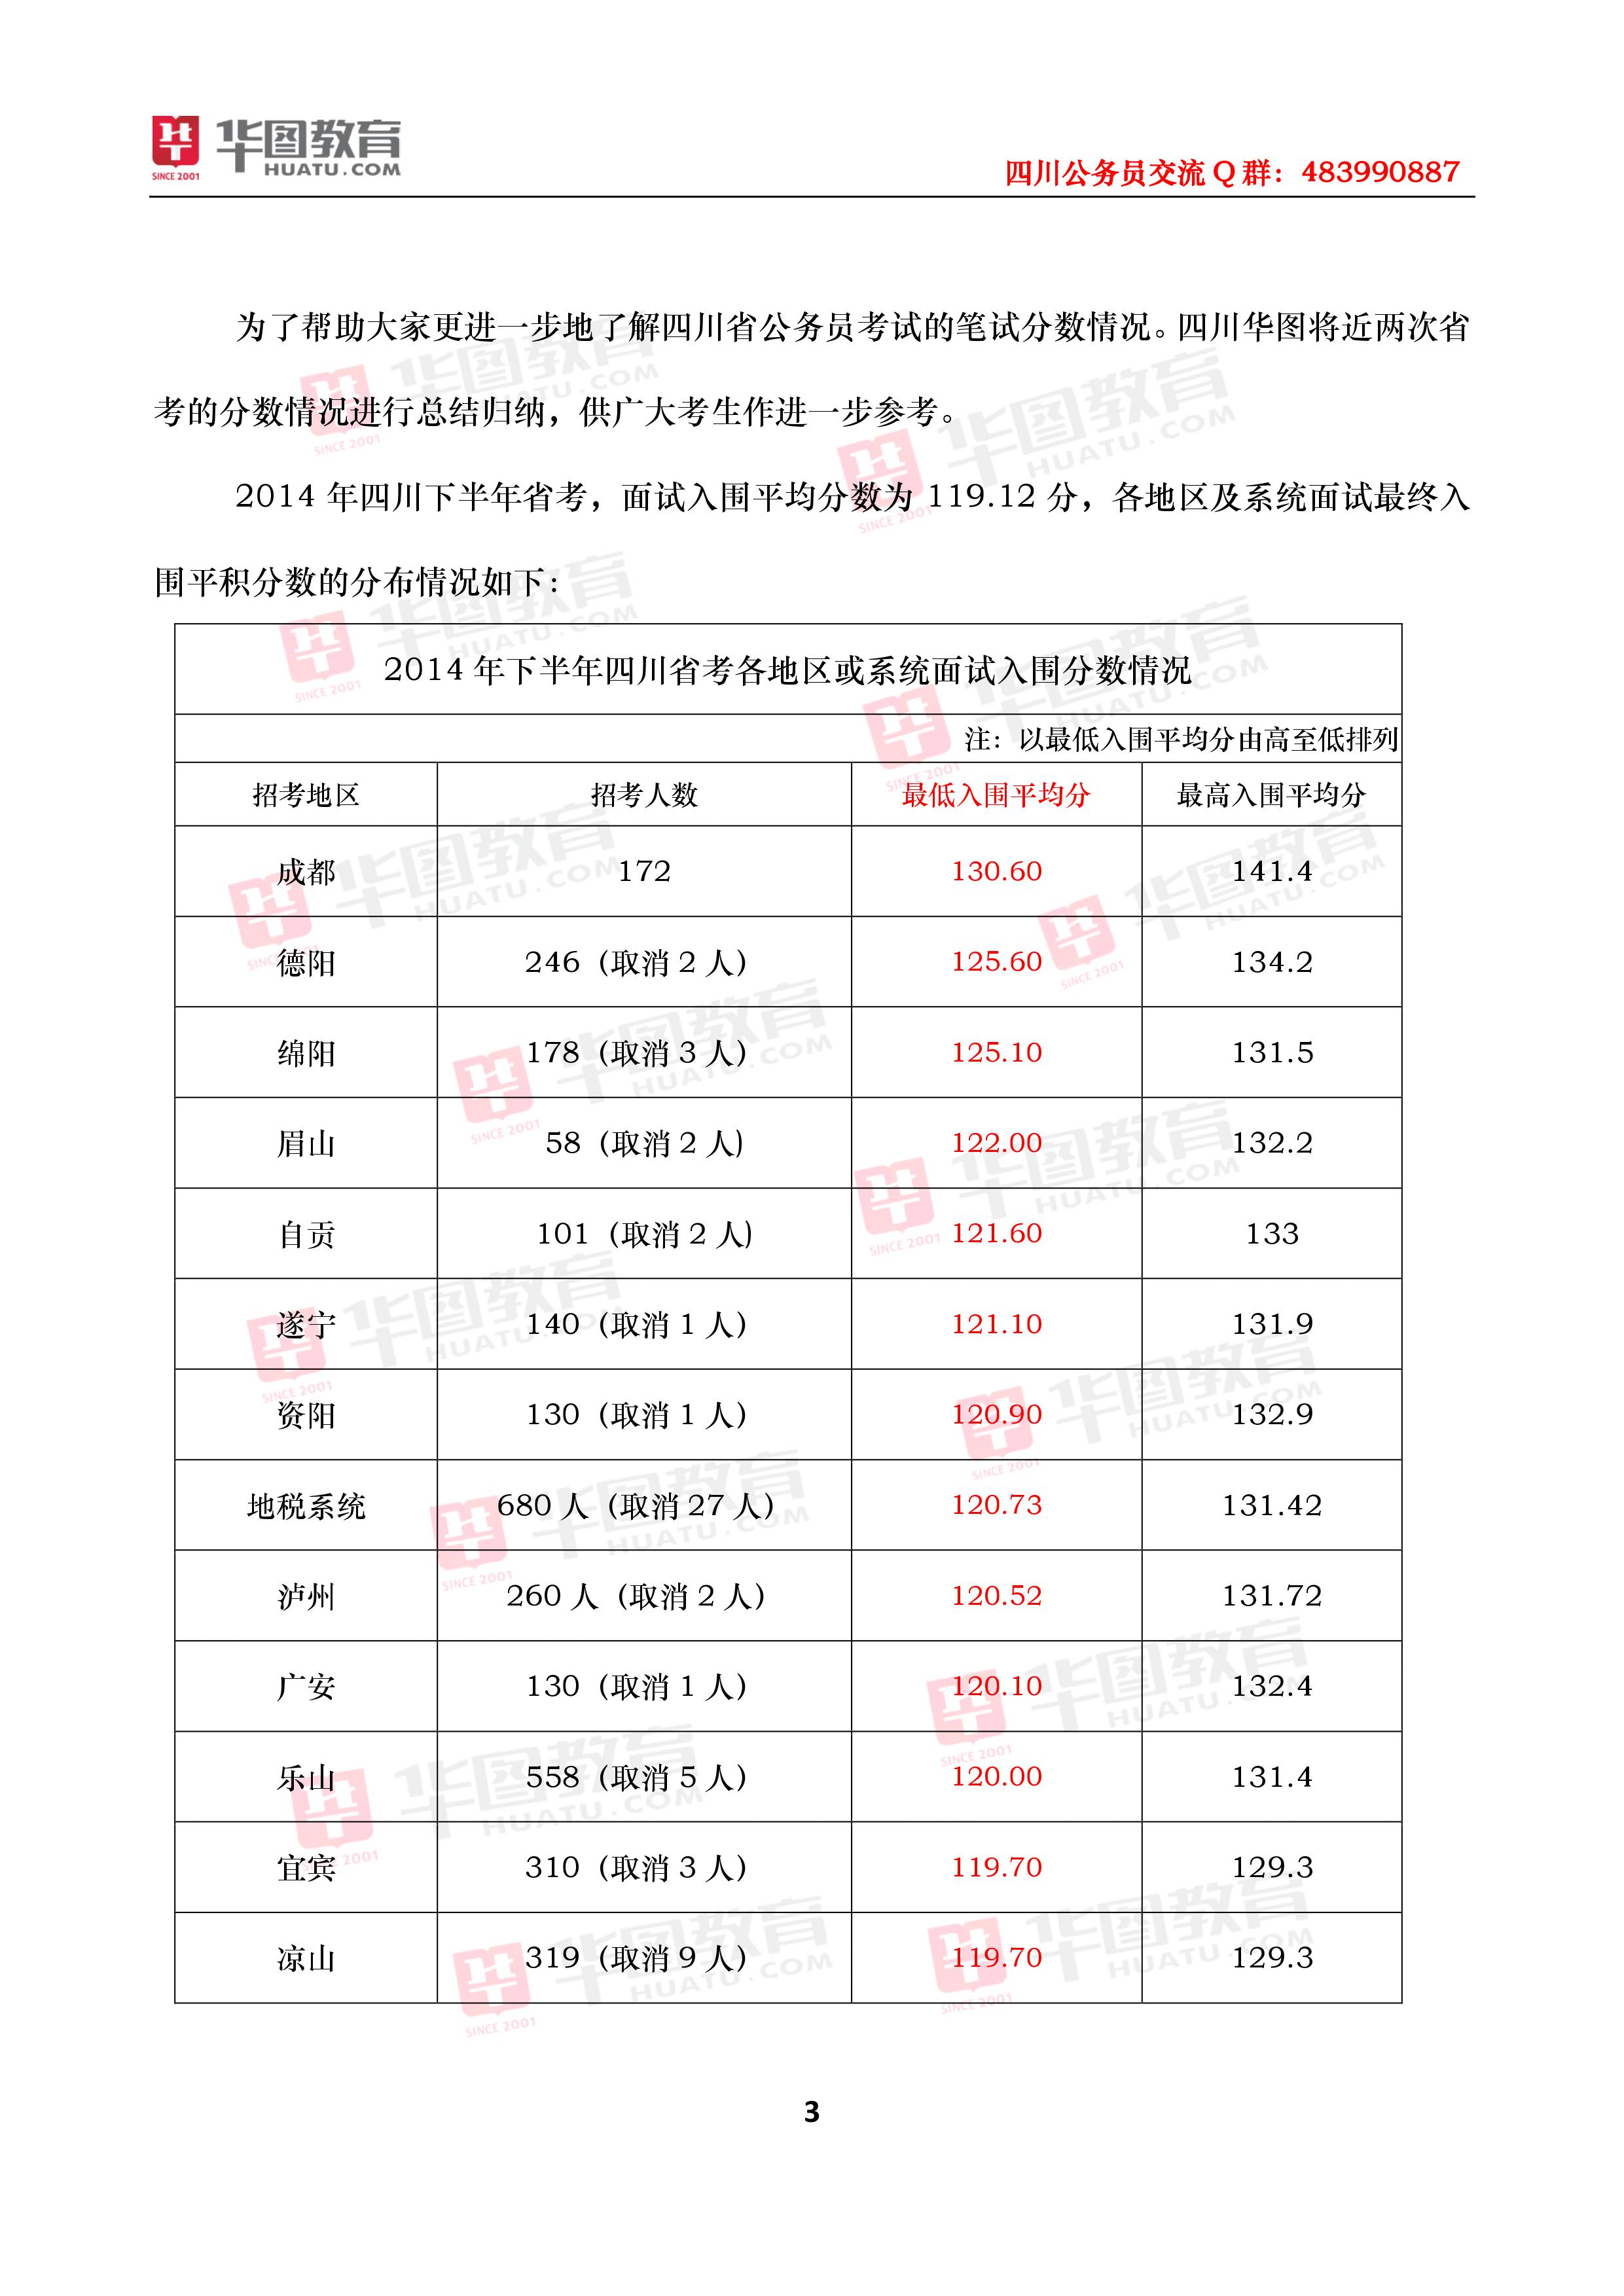 2017年上半年四川省公务员招聘考试笔试分数线